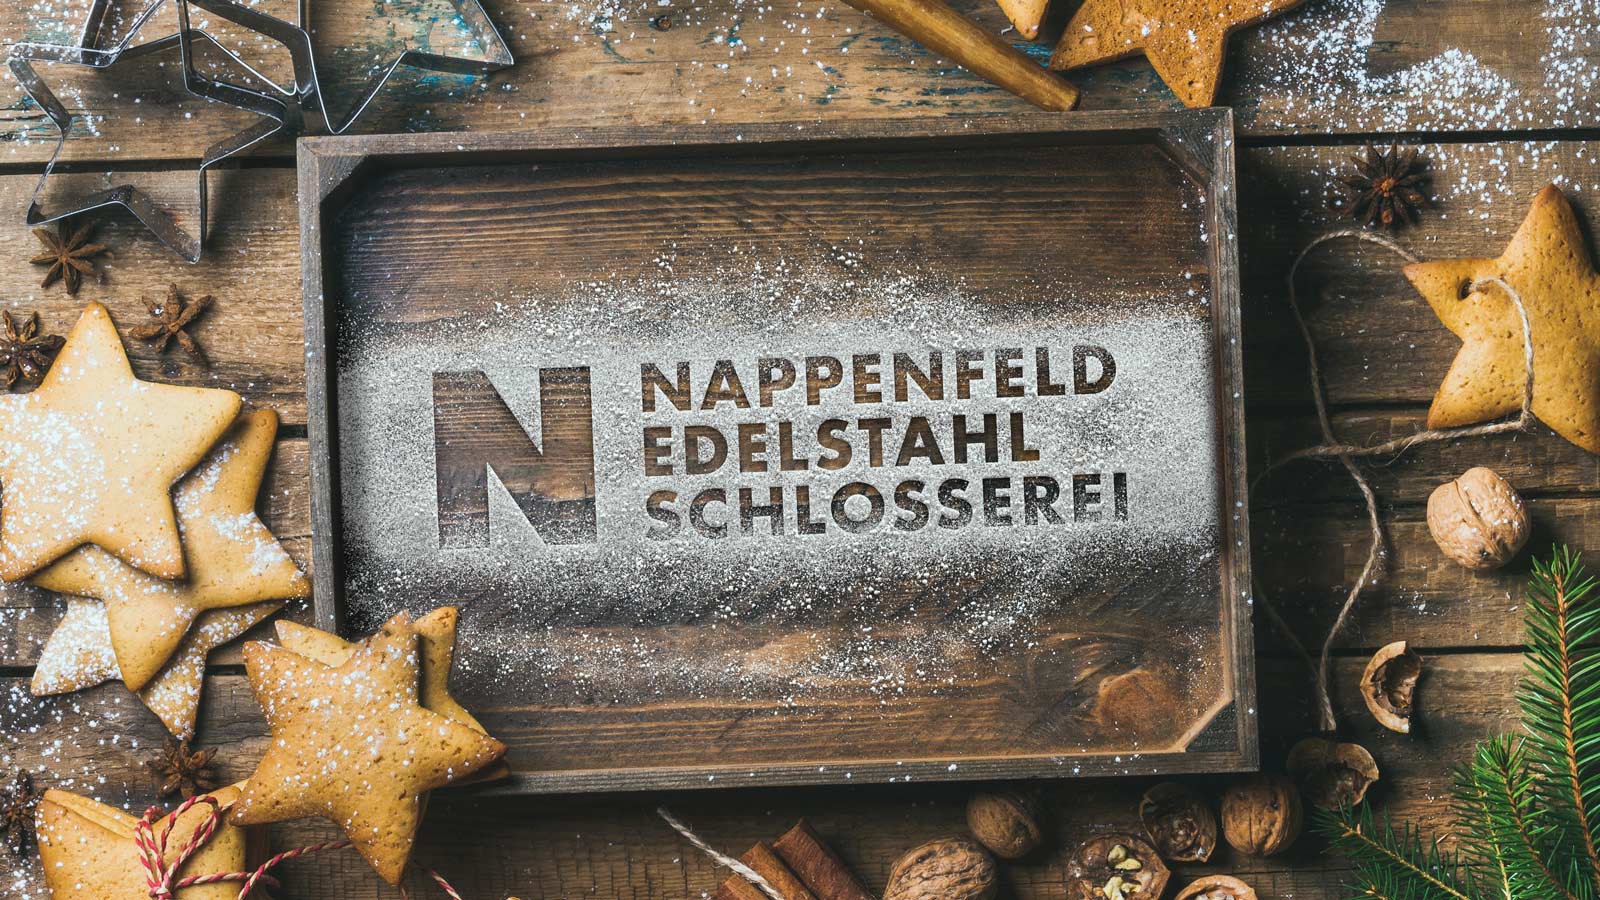 Trotz erschwerten Bedingungen in diesem Jahr wünscht die Edelstahlschlosserei Nappenfeld aus Mühlheim Ihnen ein tolles Weihnachtsfest im Kreis Ihrer Liebsten!